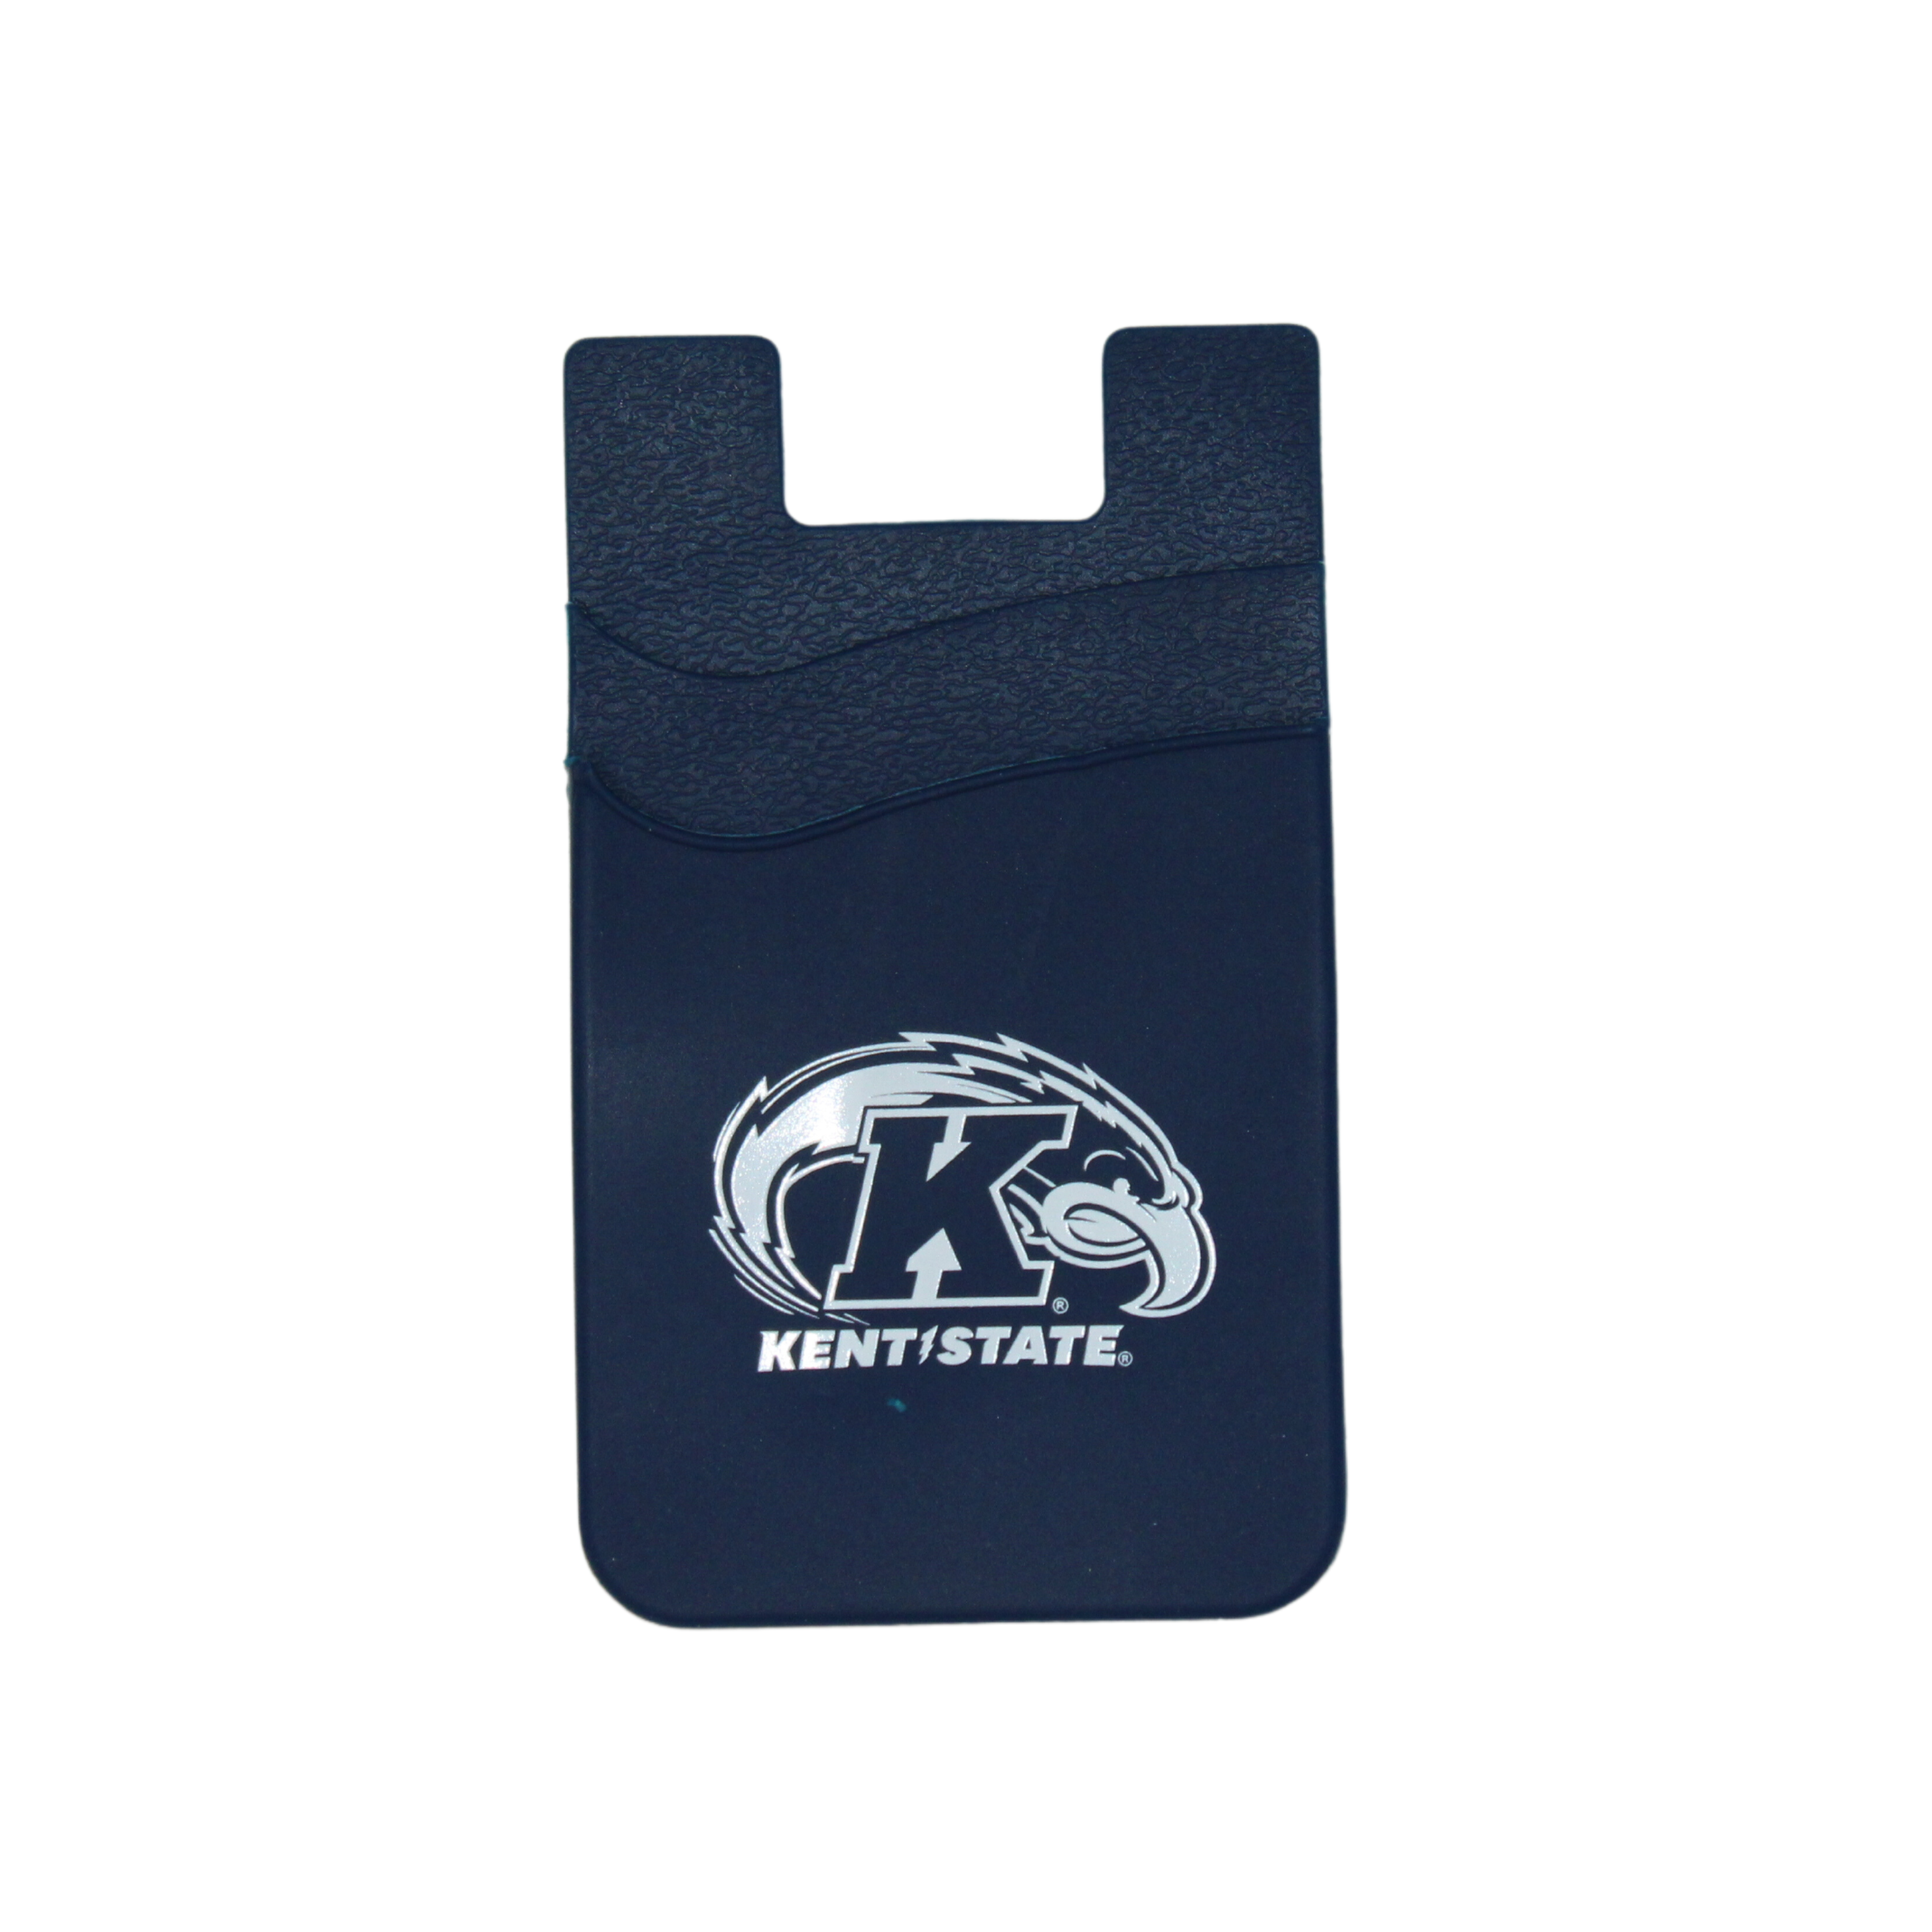 Kent State Navy Dual Pocket Phone Wallet